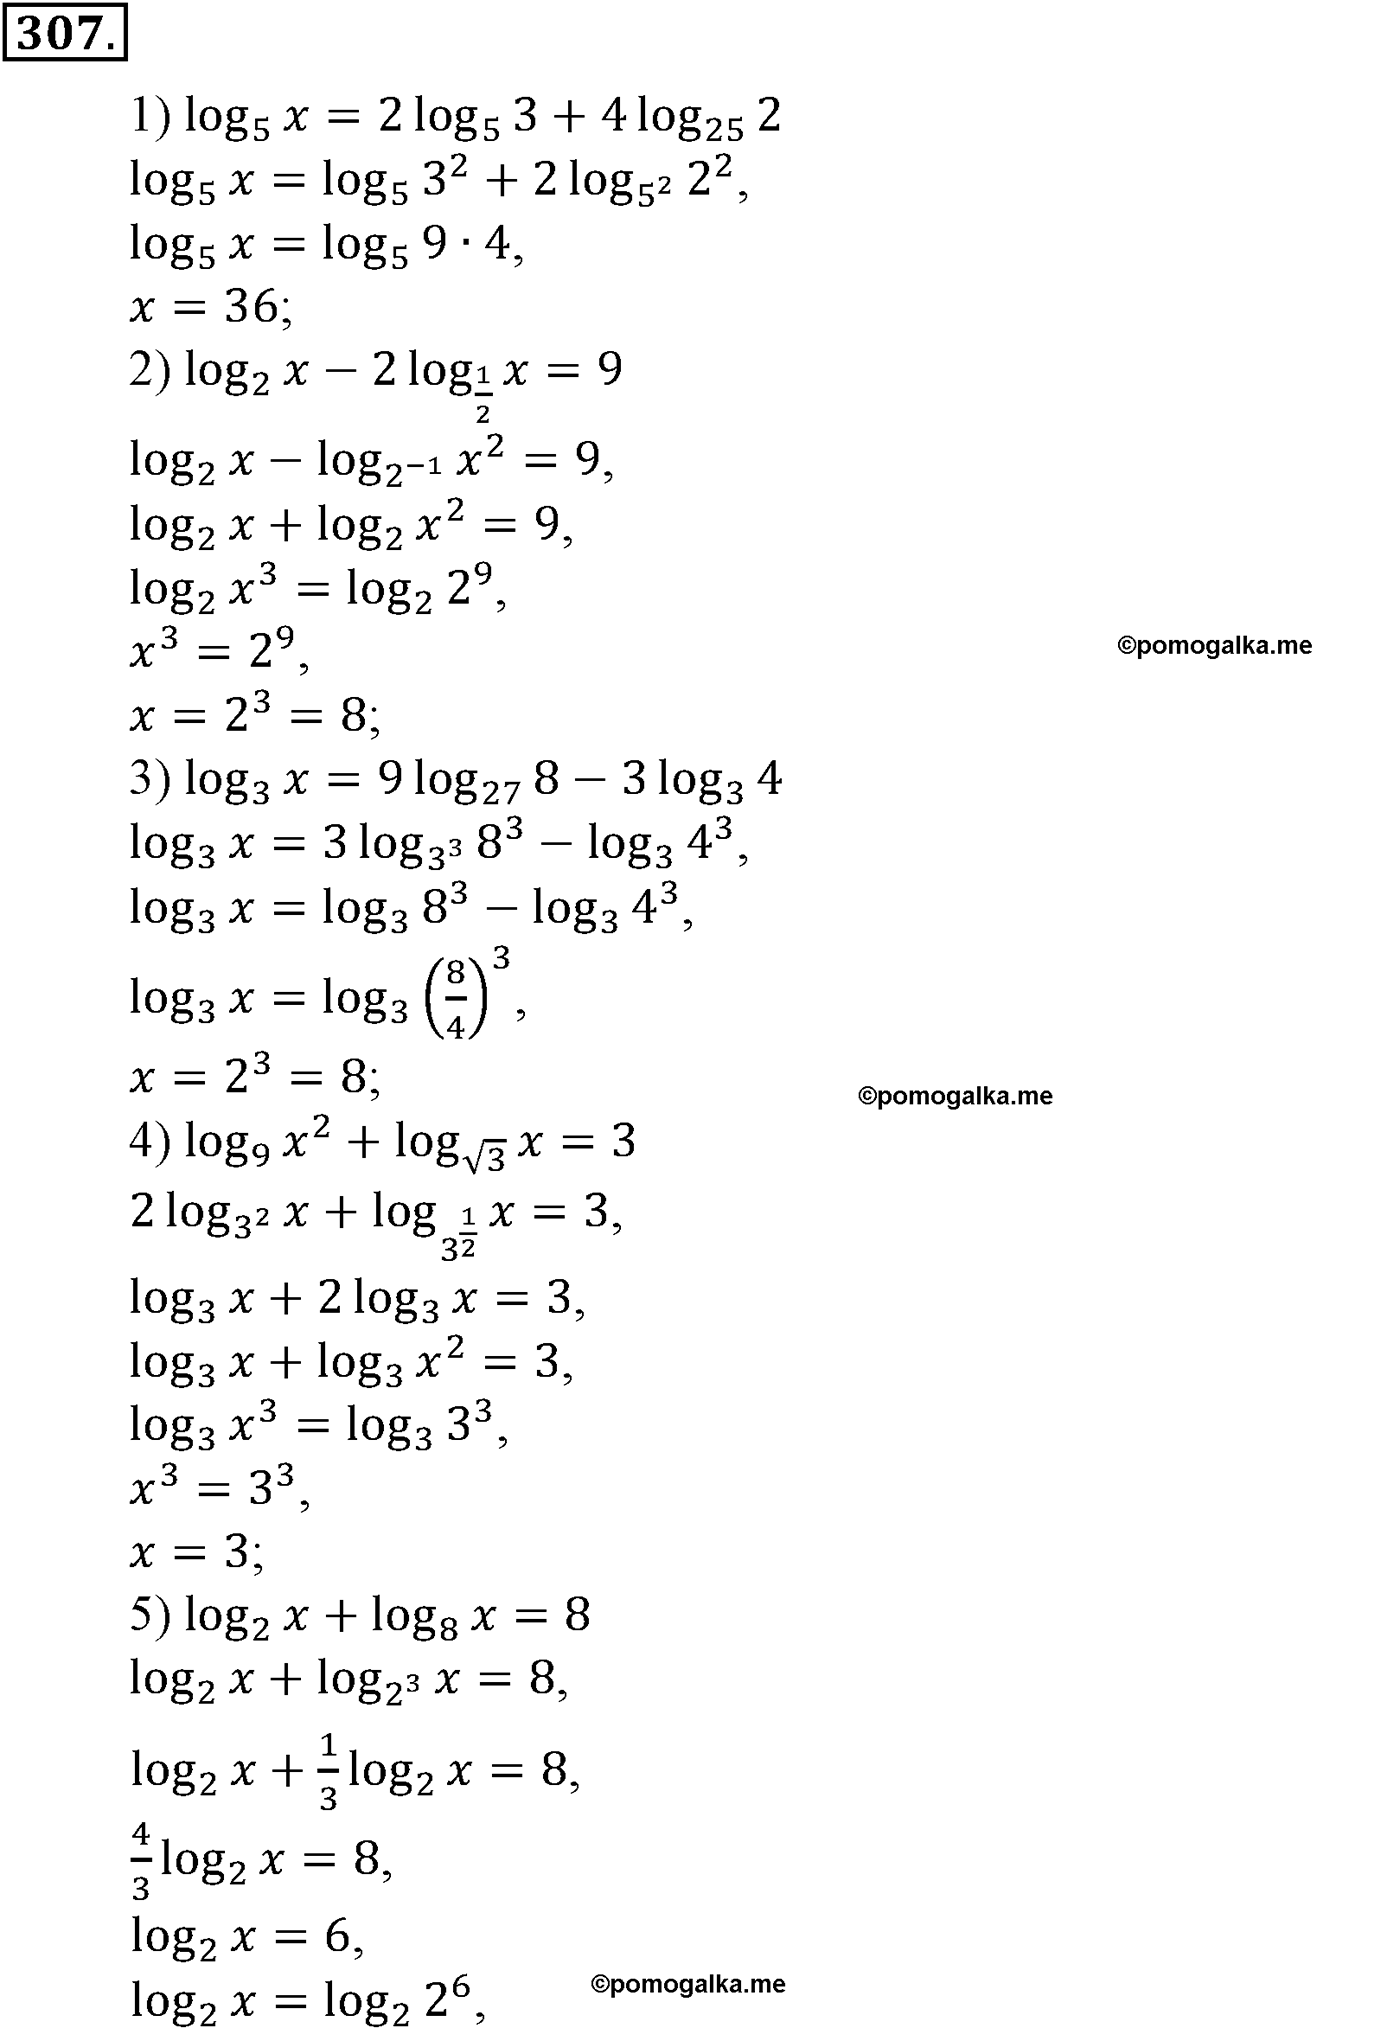 разбор задачи №307 по алгебре за 10-11 класс из учебника Алимова, Колягина